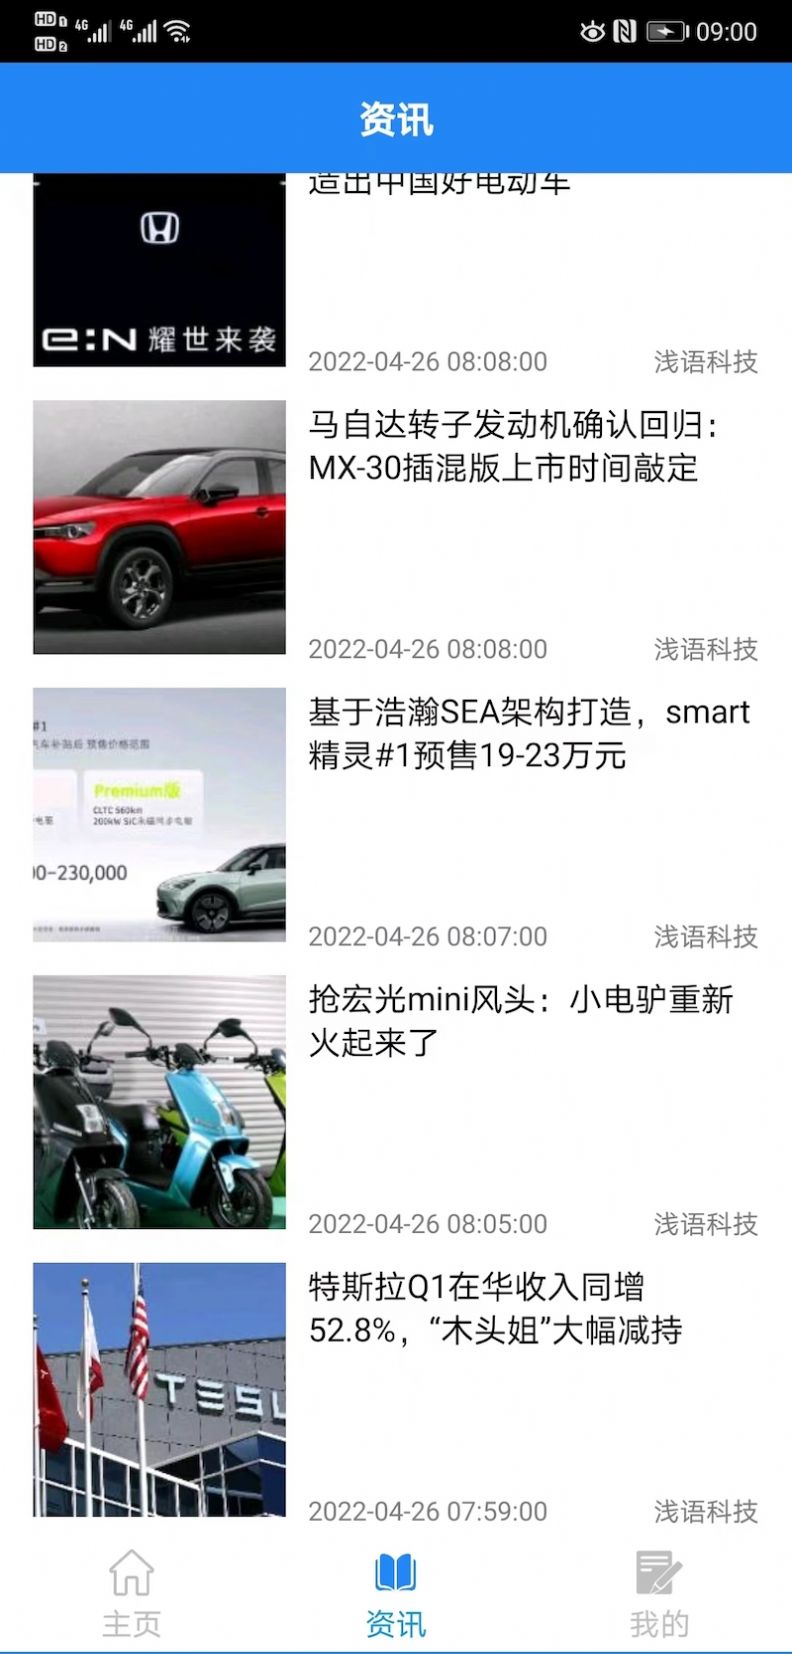 北京赛车软件ios版手机版